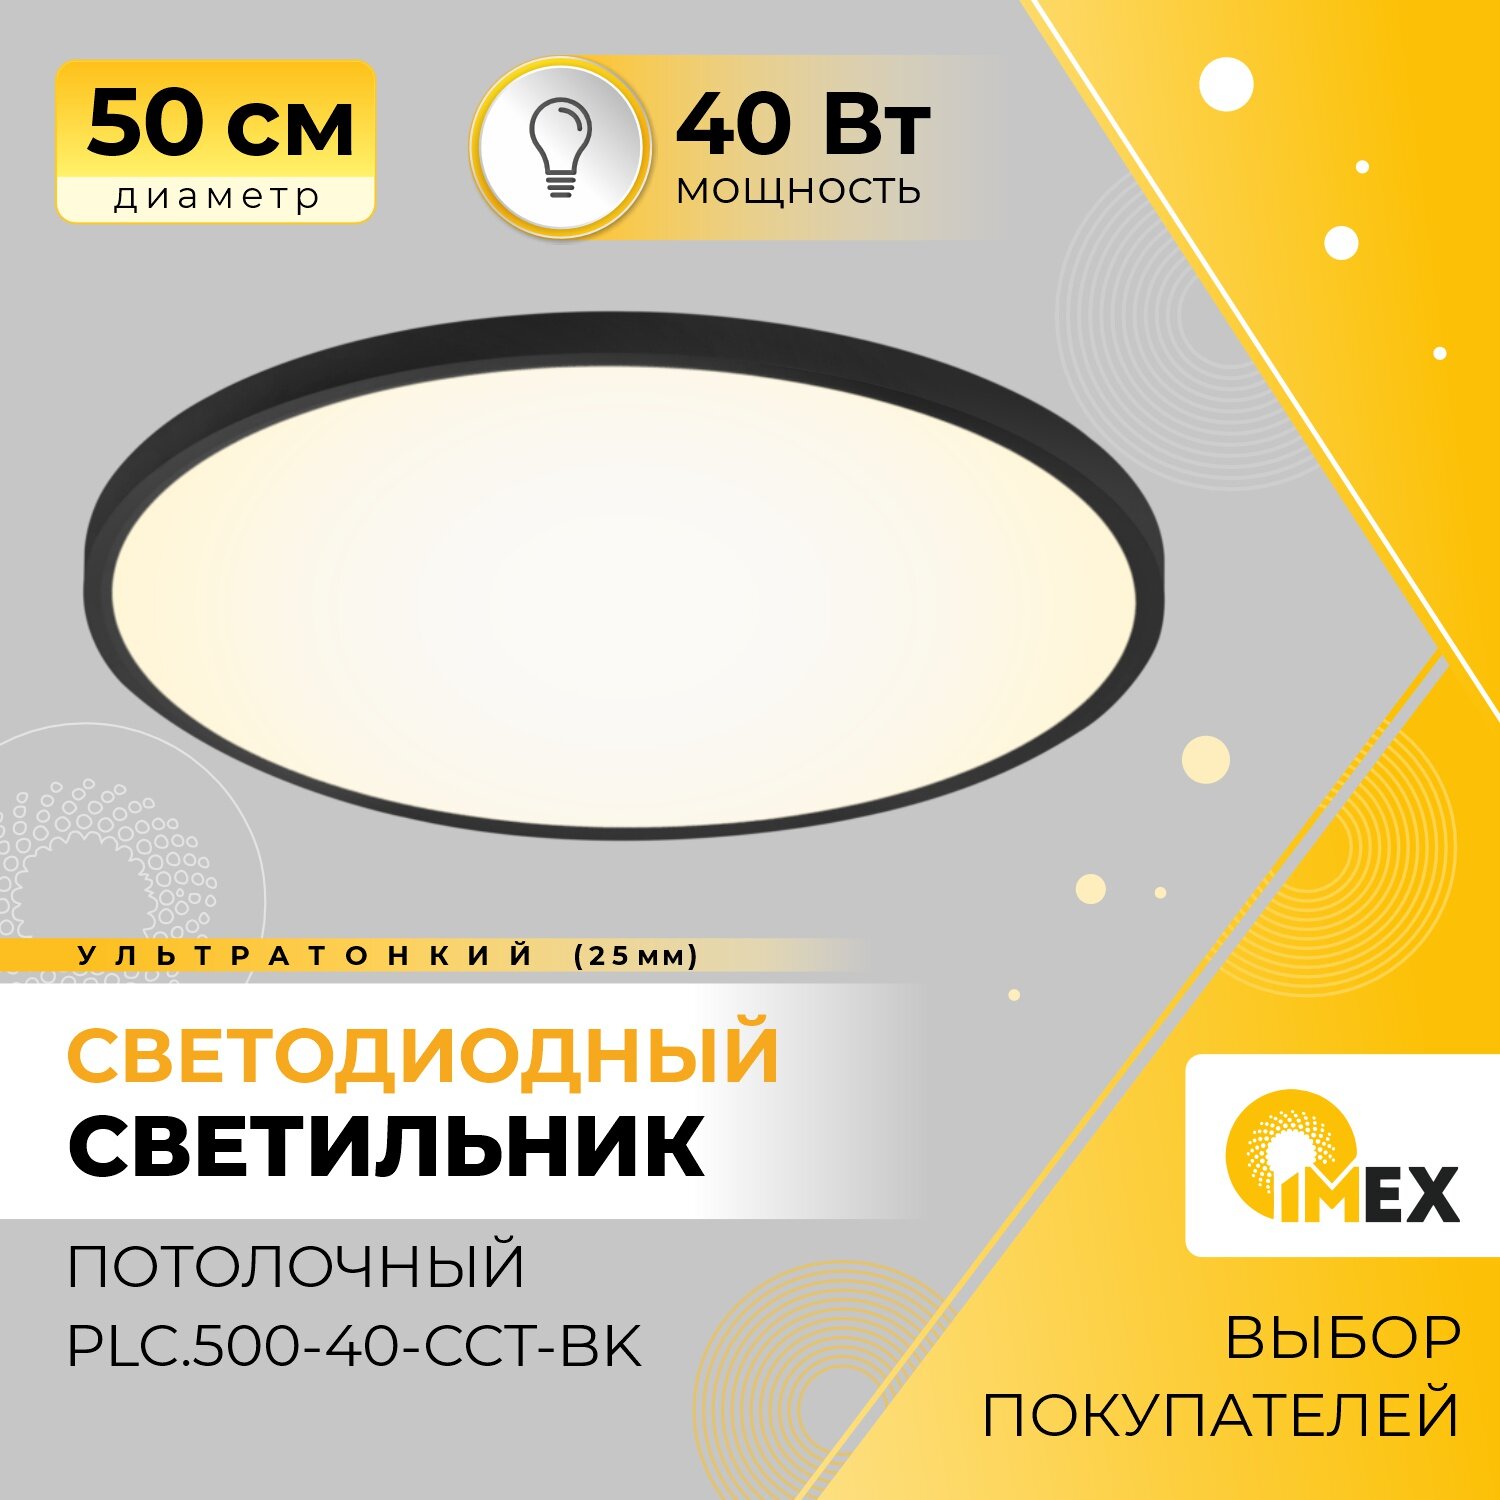 Потолочный светильник IMEX Ronda PLC.500-40-CCT-BK - фотография № 1